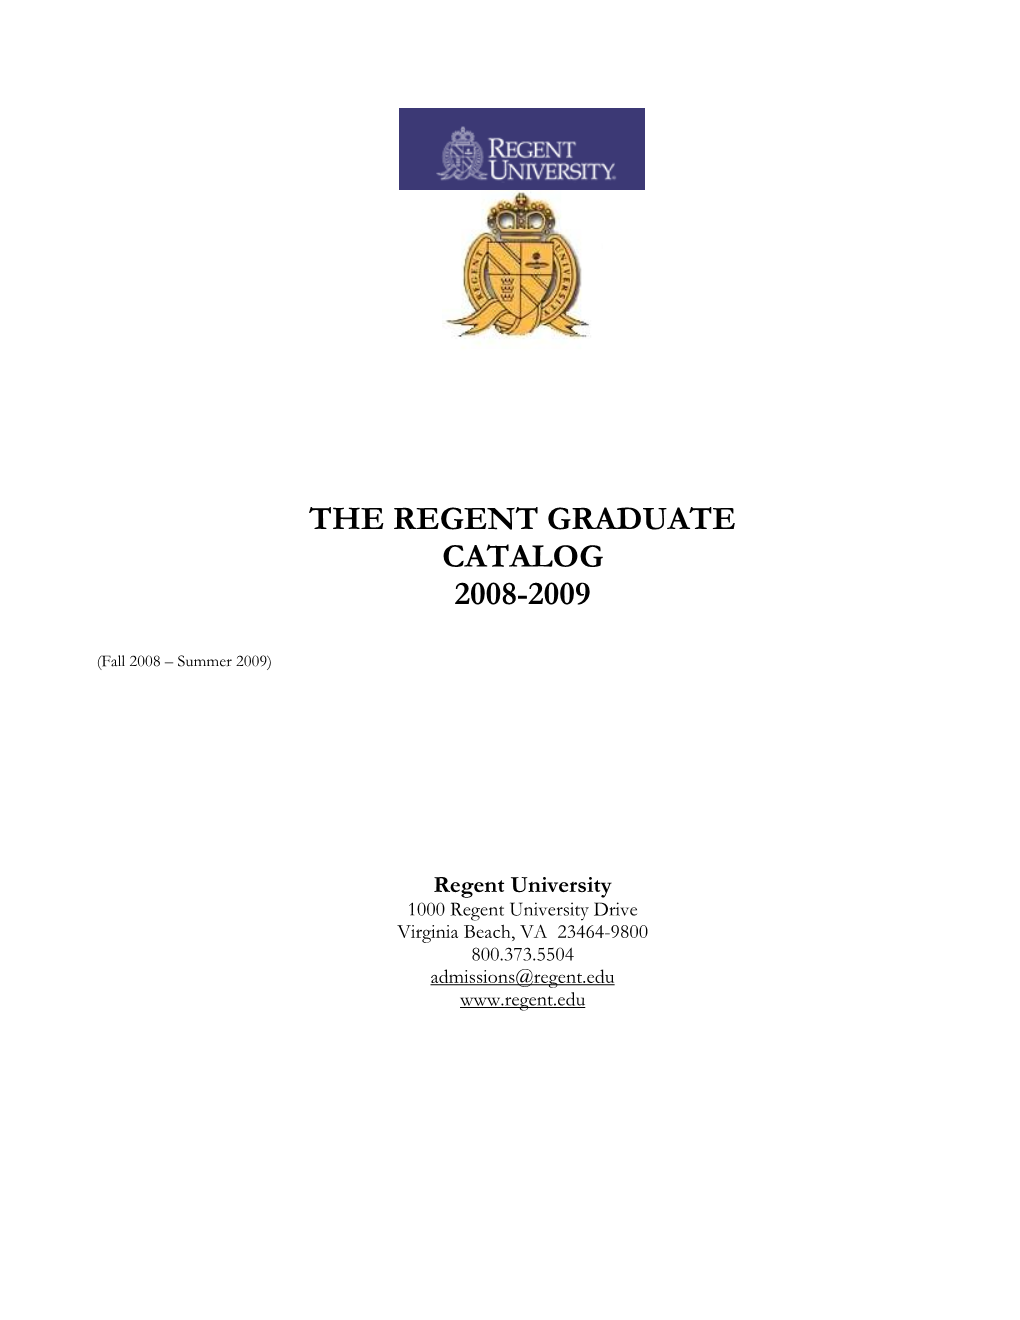 Official Graduate Schools Catalog